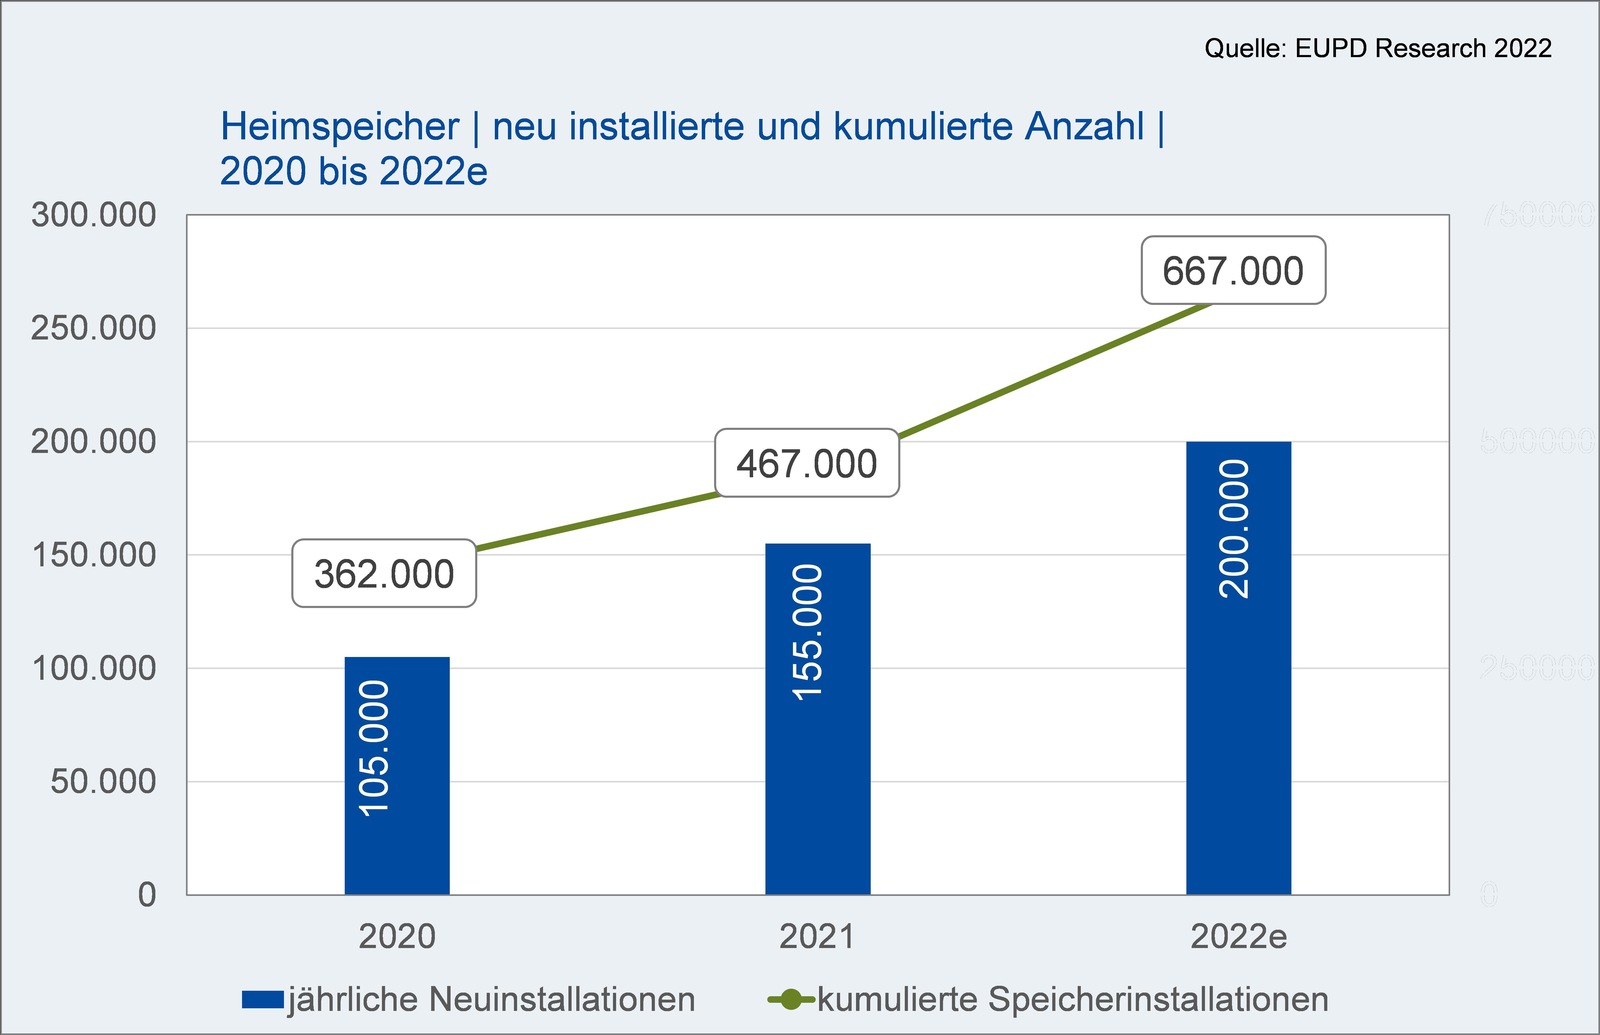 EUPD rechnet mit 220.000 neuen Heimspeichern in 2022